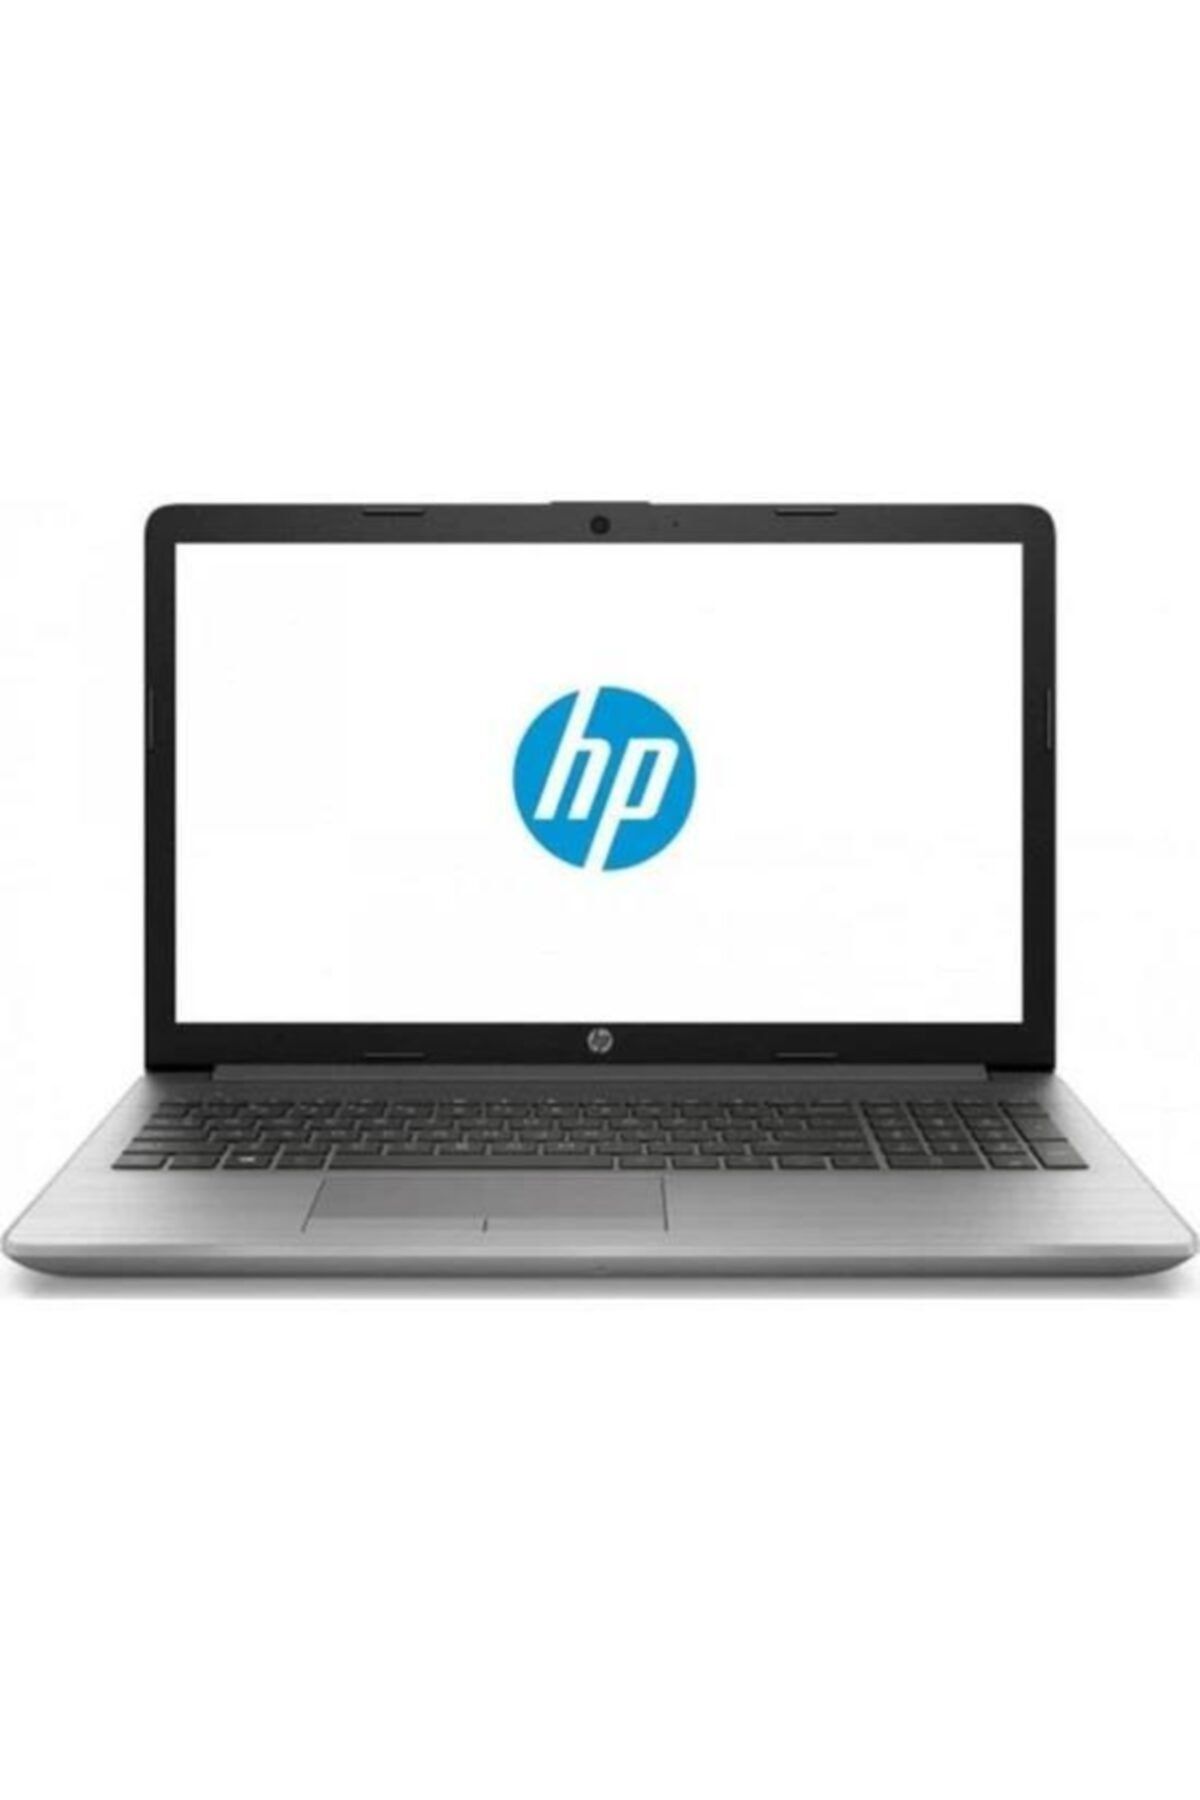 HP Probook 450 G7 8vu16ea Core I5-10210u 8gb 256gb Ssd 15.6" W10p